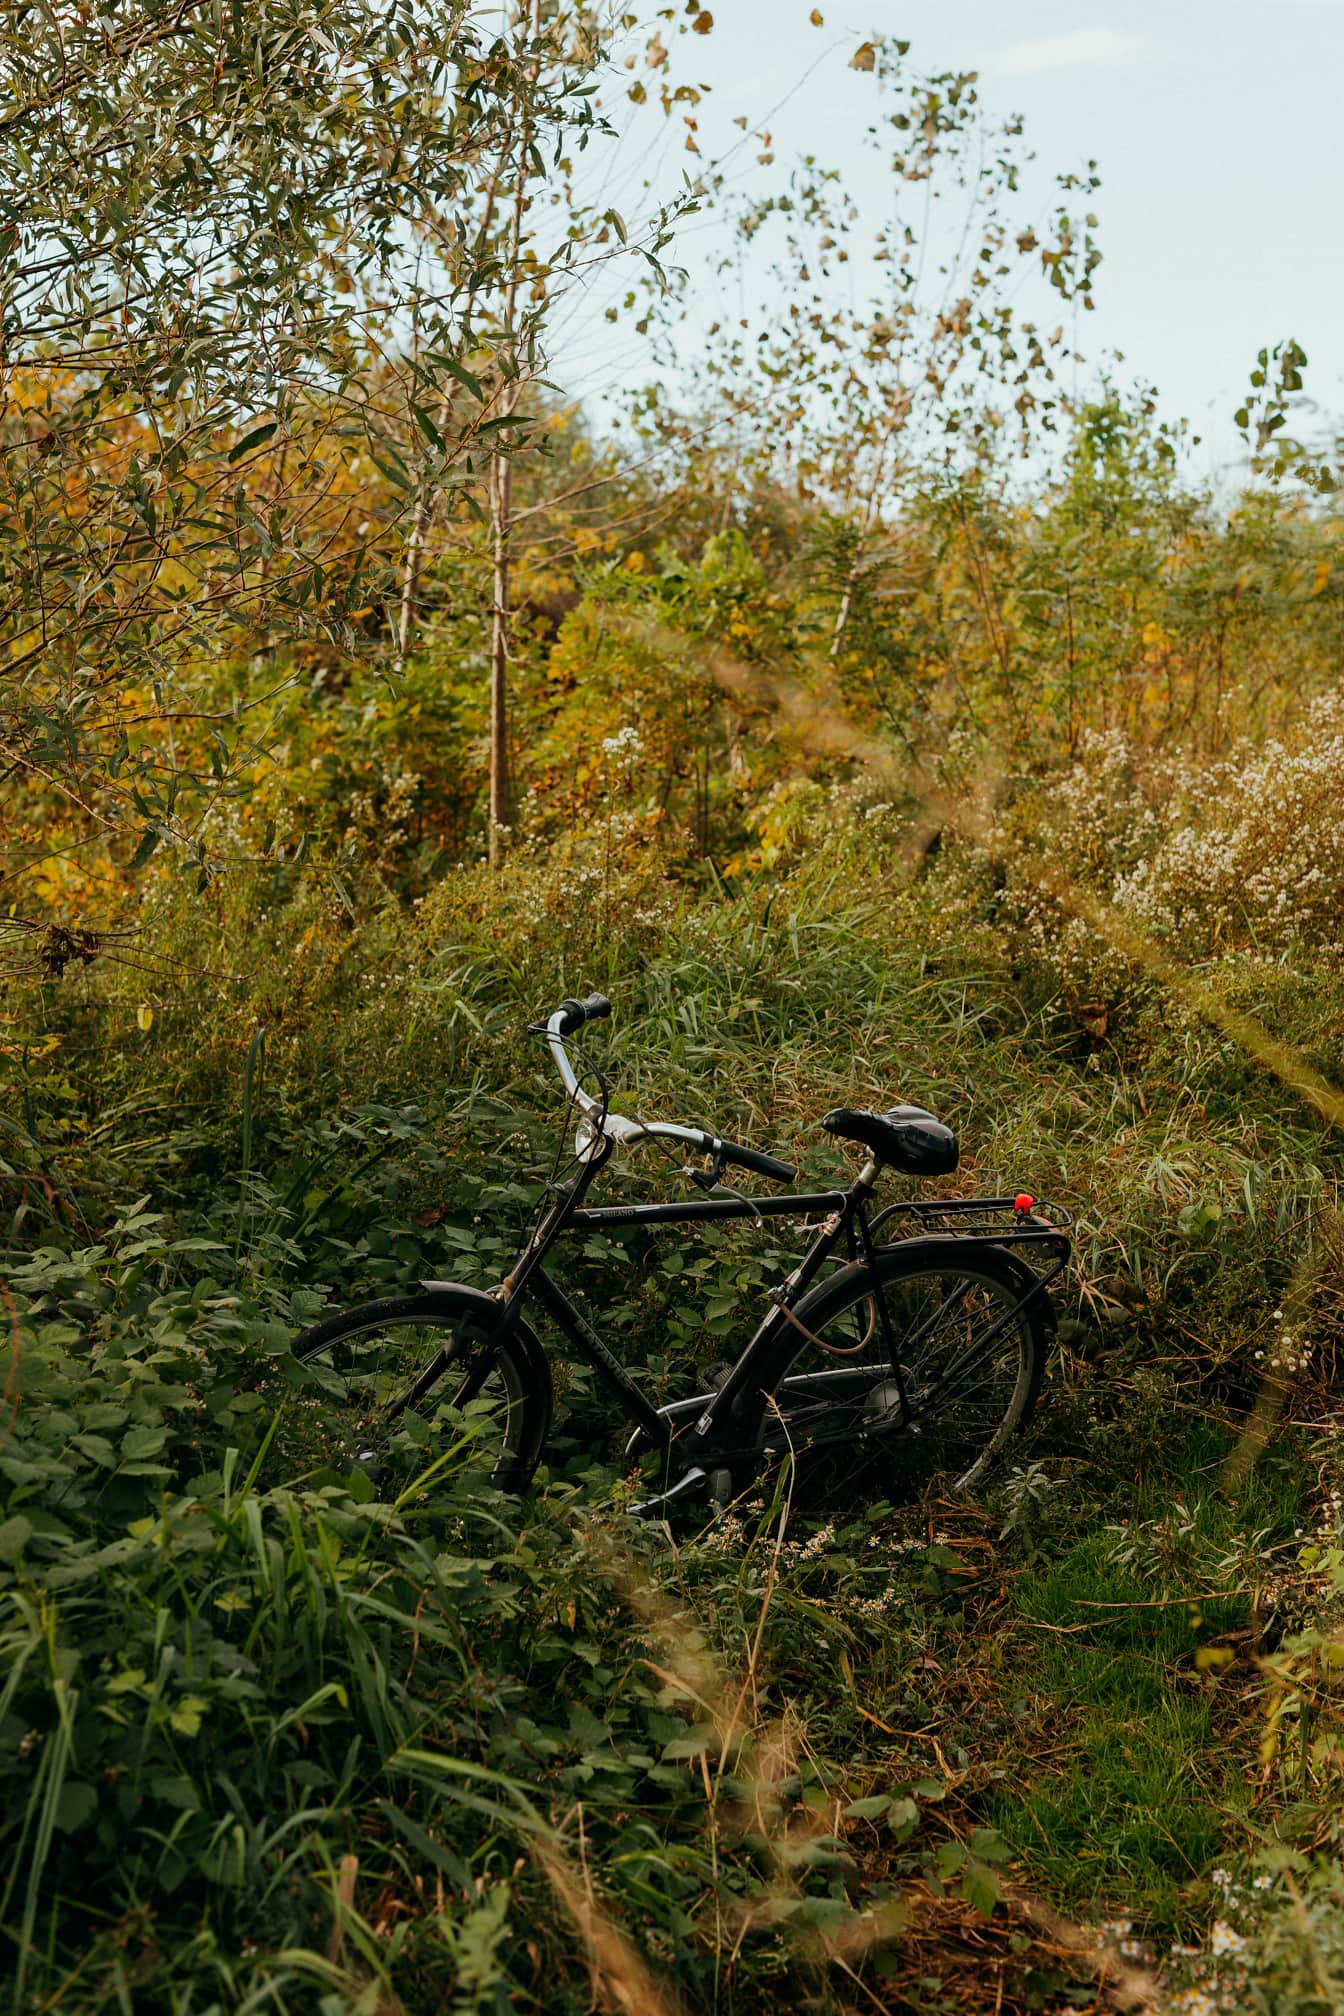 Sort cykel i høje græsplanter på landet